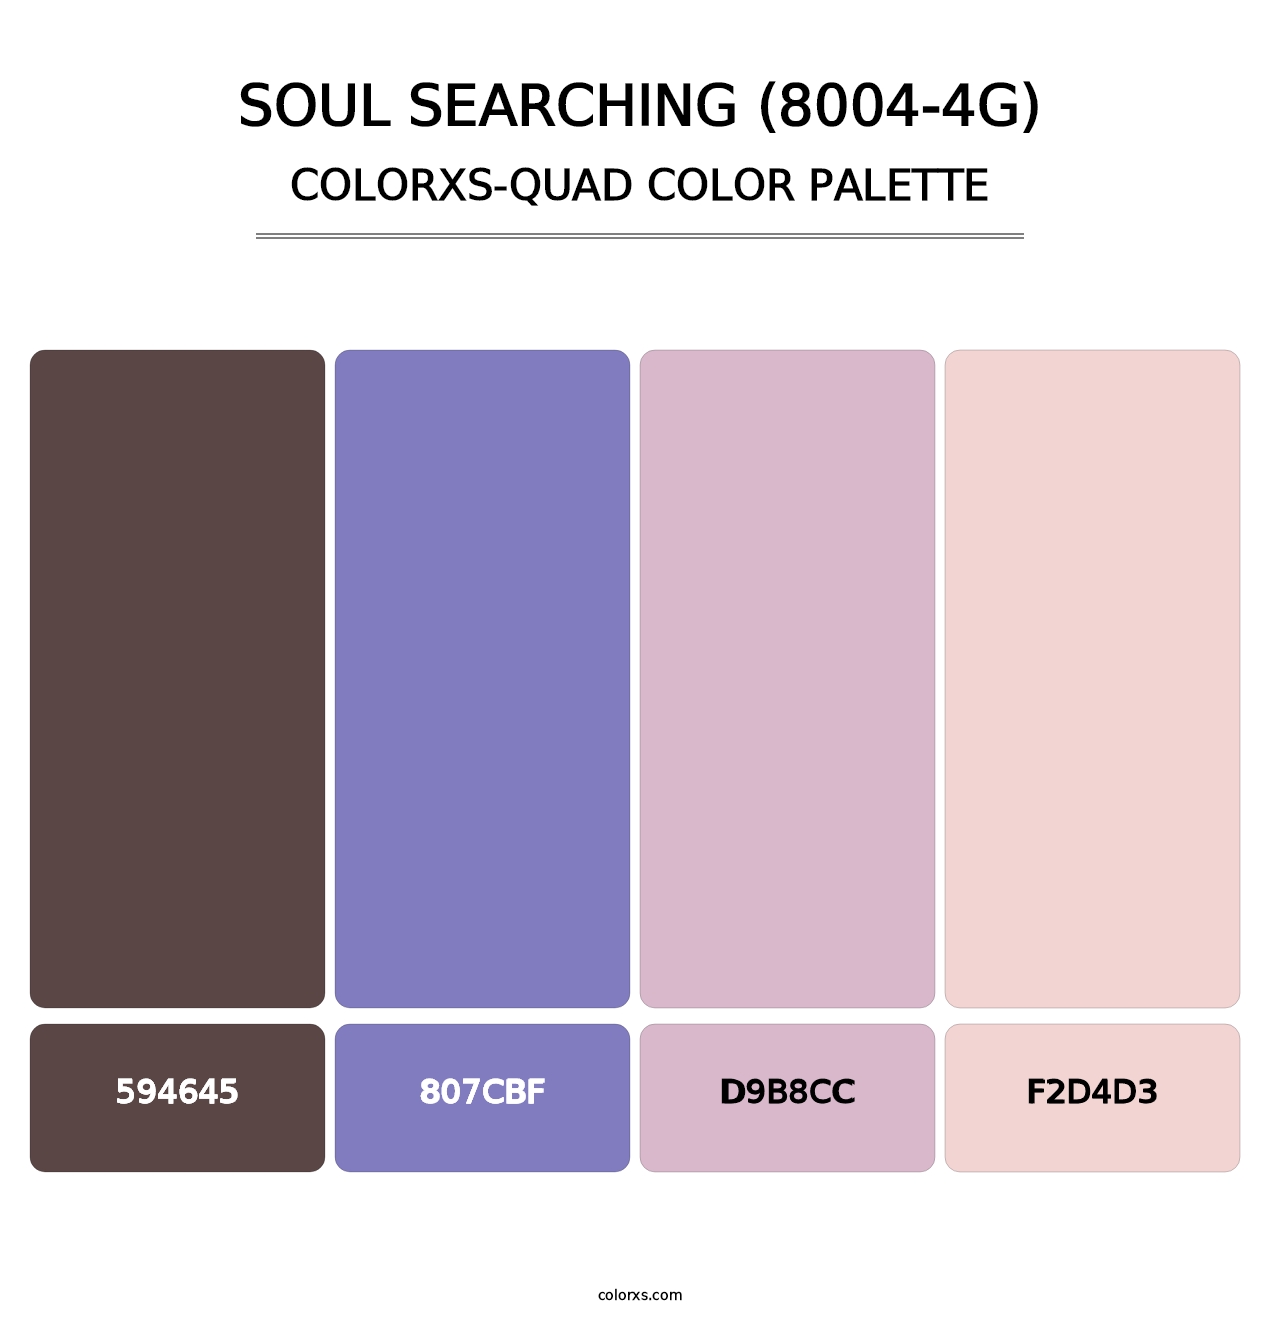 Soul Searching (8004-4G) - Colorxs Quad Palette